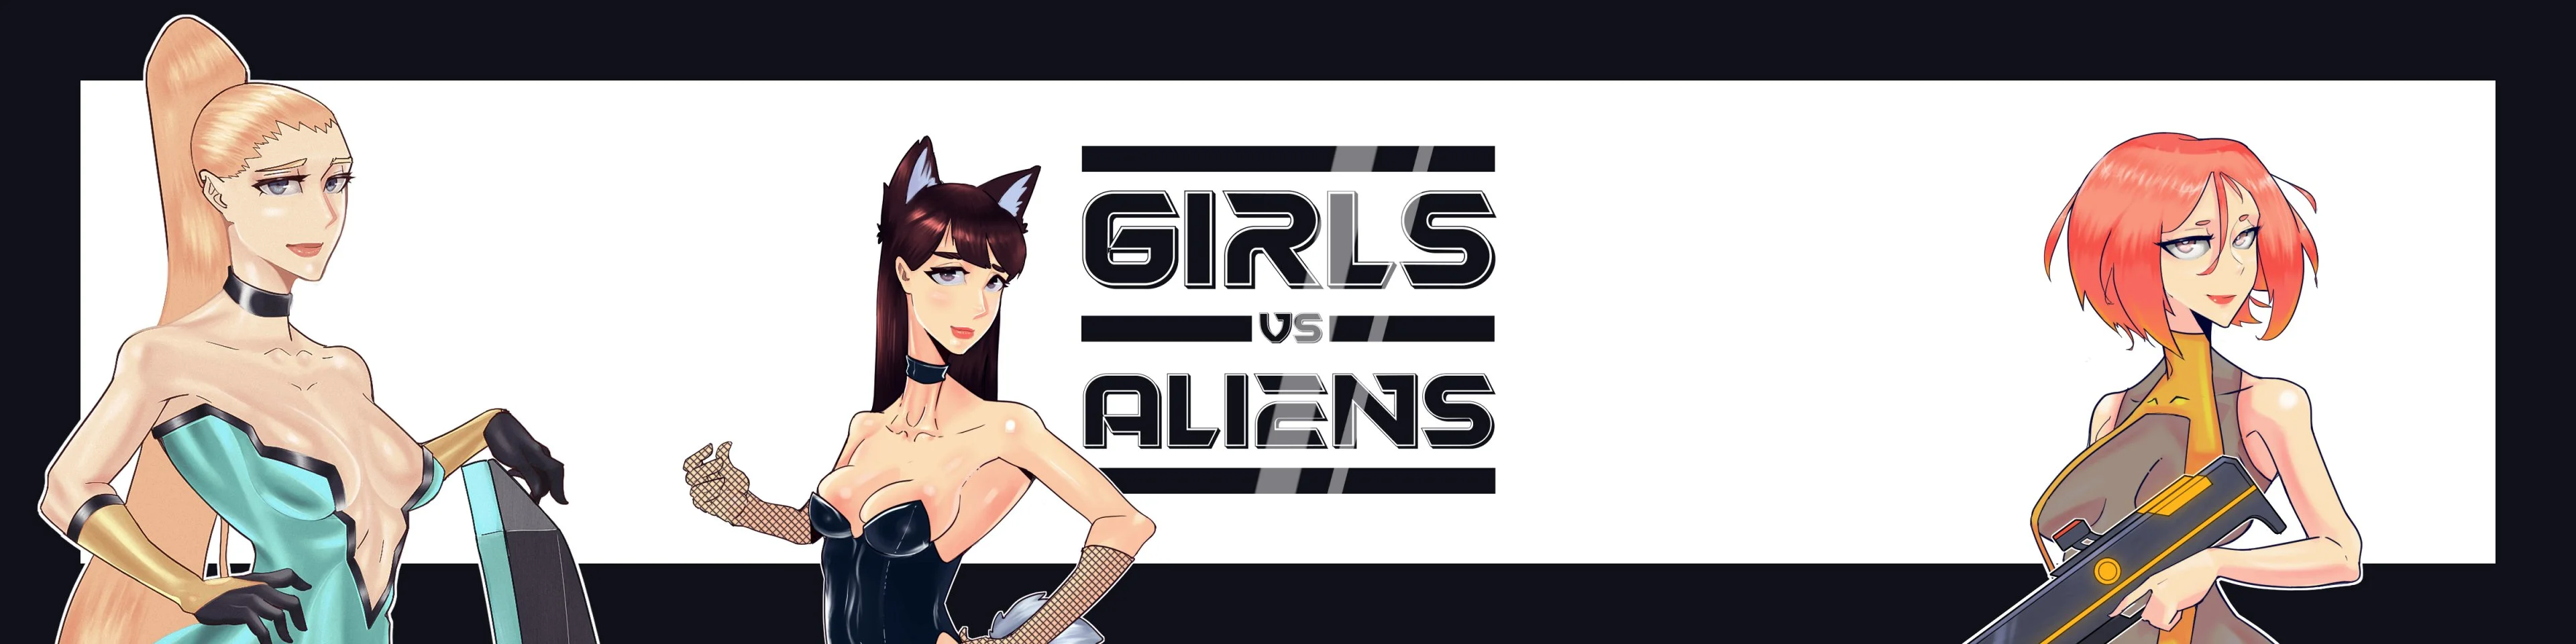 Girls vs Aliens [v0.1.0] main image